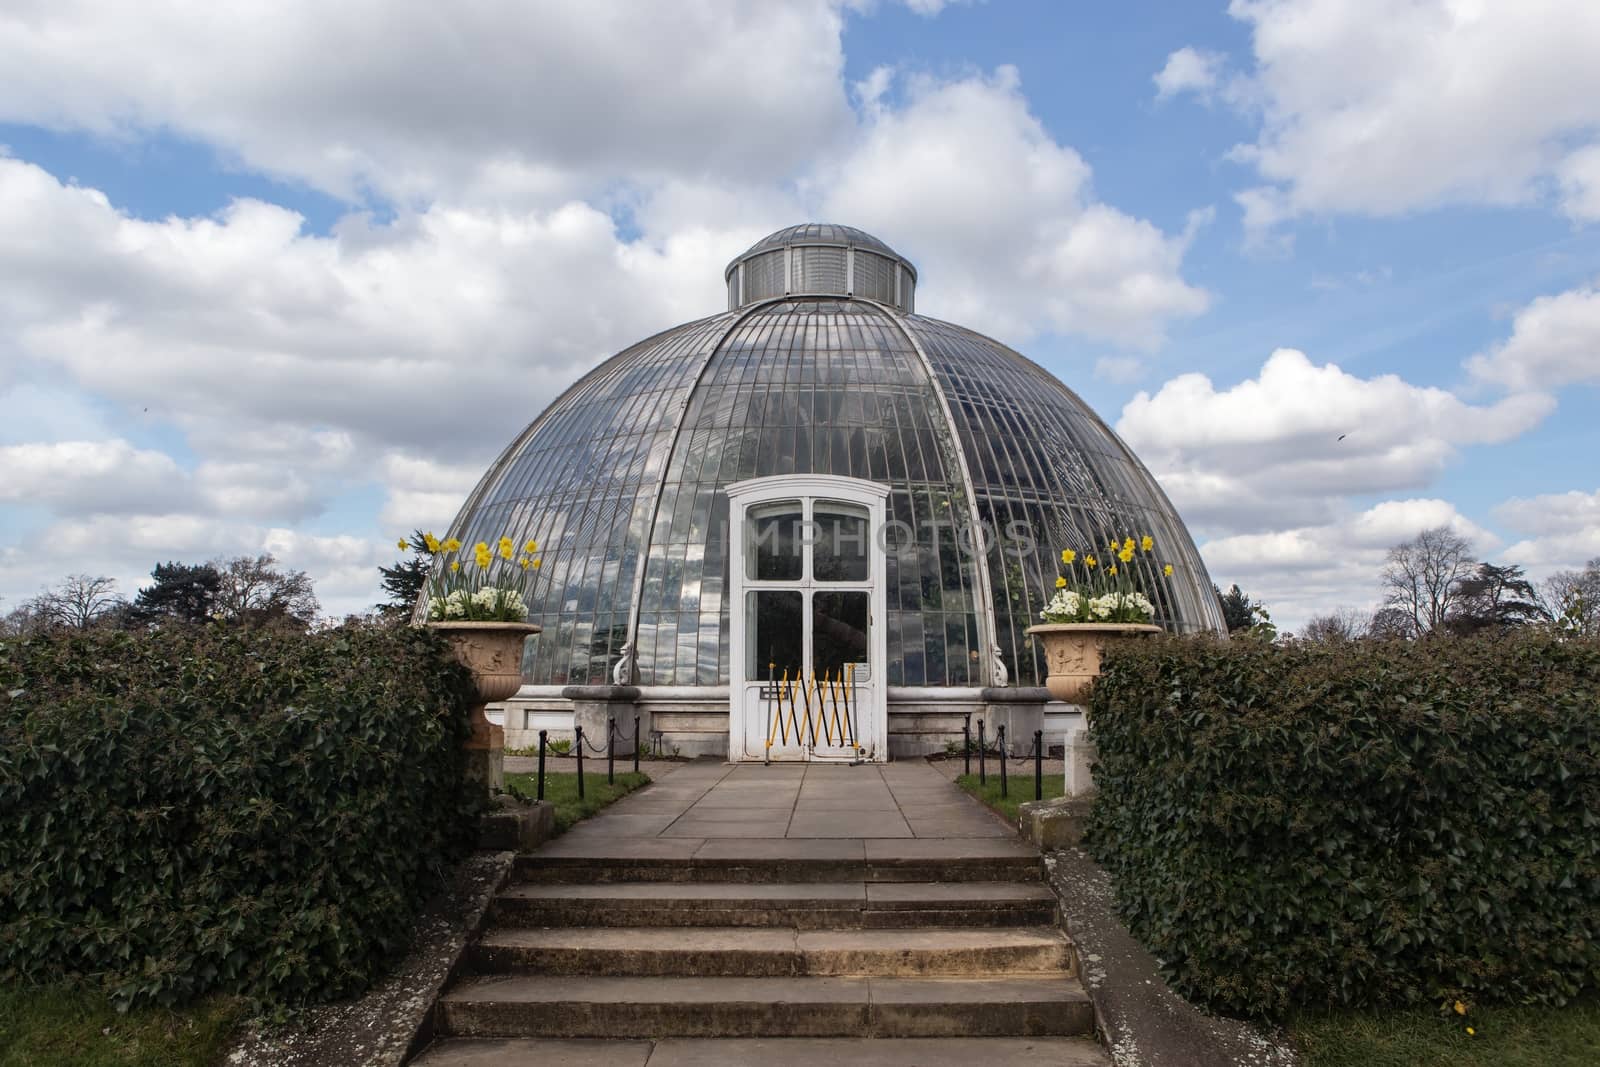 Royal Botanic Gardens, Kew in London